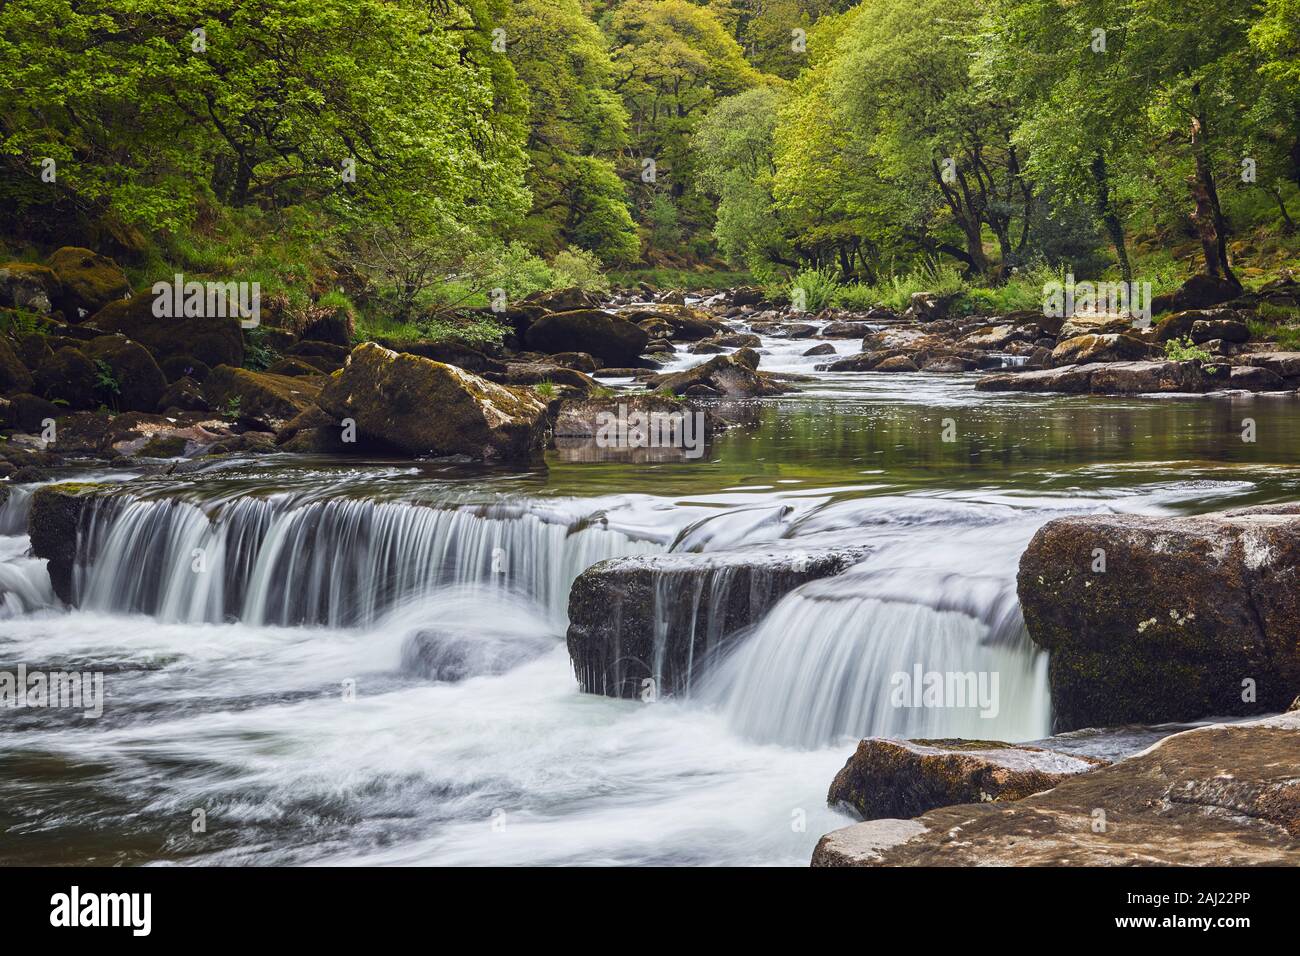 Un cours d'eau forestiers, la rivière Dart qui coule à travers l'ancienne forêt de chênes, au coeur du Parc National de Dartmoor, dans le Devon, Angleterre, Royaume-Uni, Europe Banque D'Images